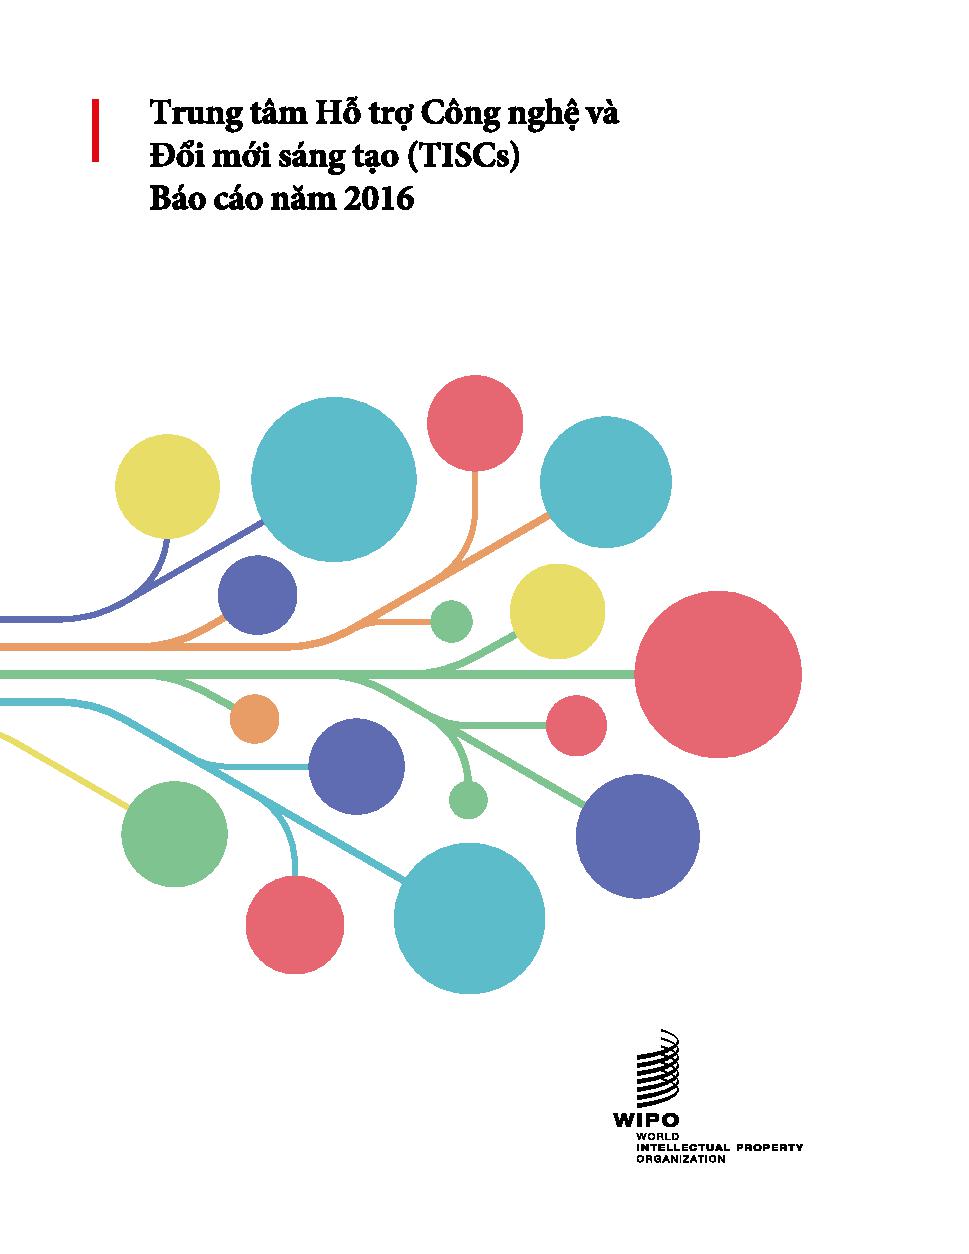 Mạng lưới Trung tâm Hỗ trợ Công nghệ và Đổi mới sáng tạo (TISCs) Báo cáo năm 2016